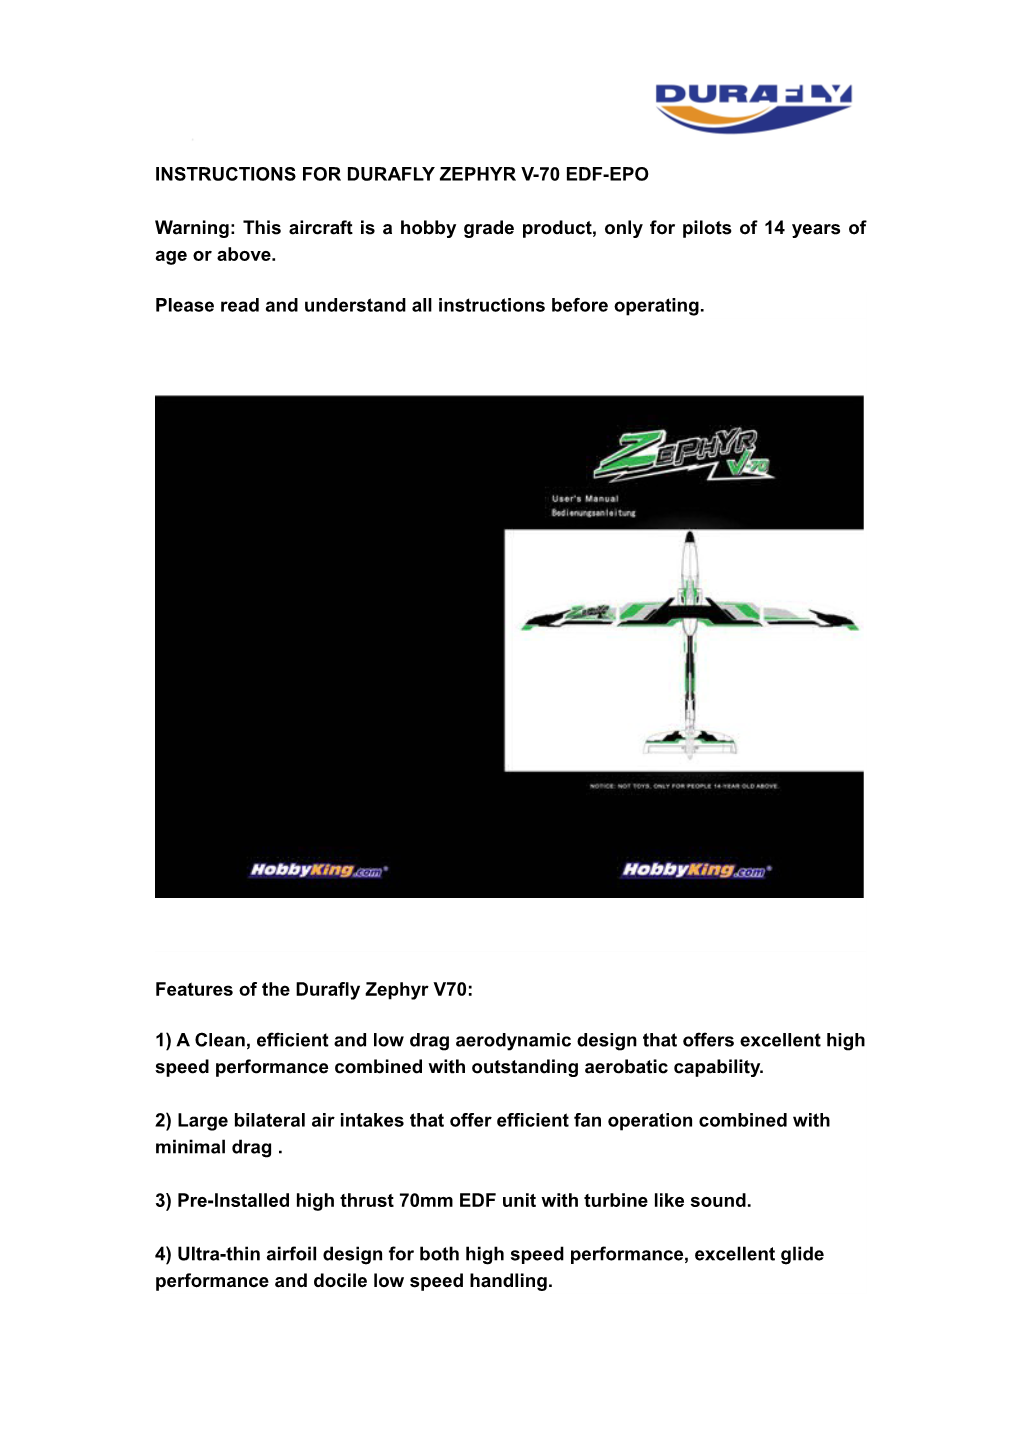 Instructions for Durafly Zephyr V-70 Edf-Epo